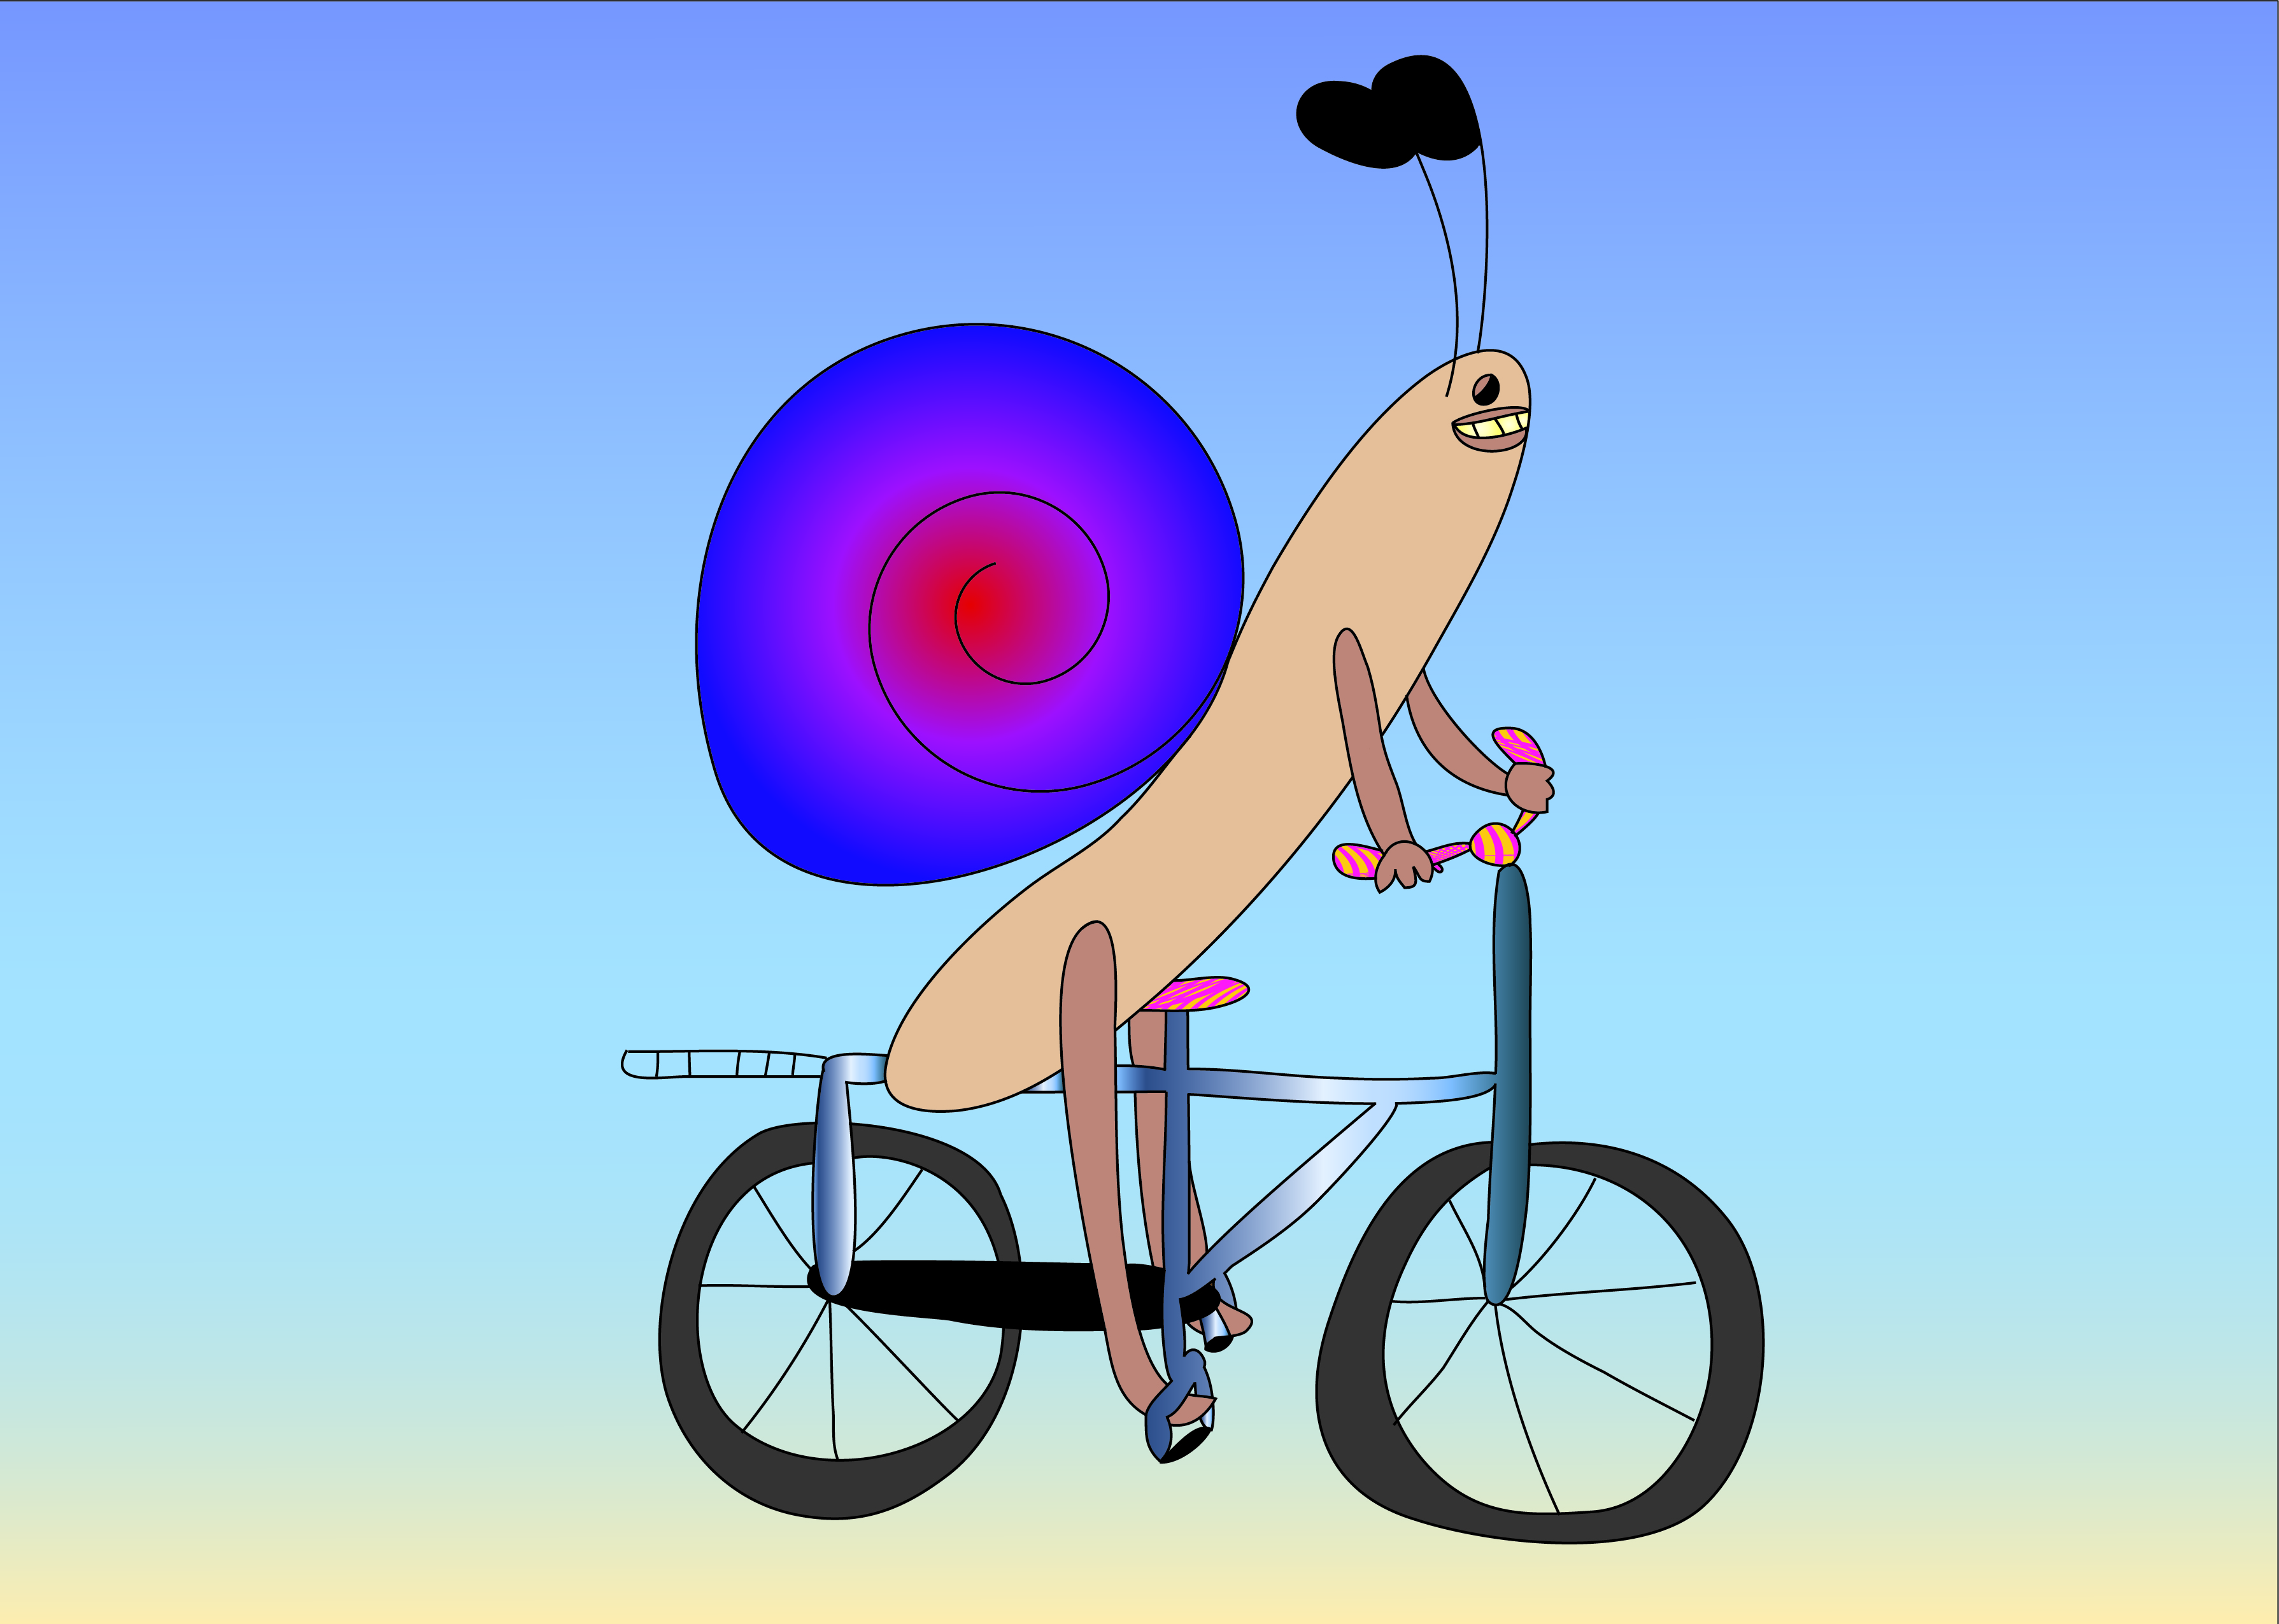 Fahrradfahrerschnecke: Illustration einer Schnecke, die auf einem Fahrrad fährt